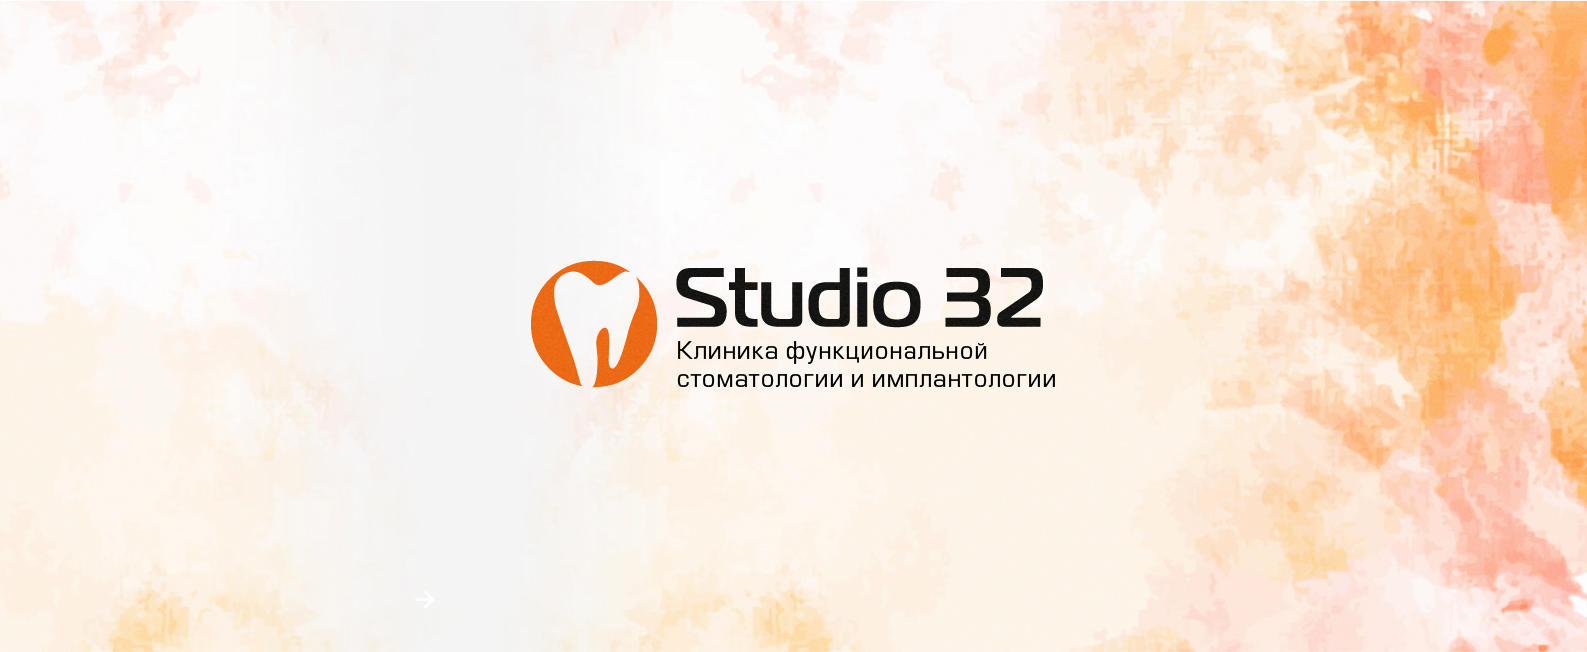 Studio 32 - dental center